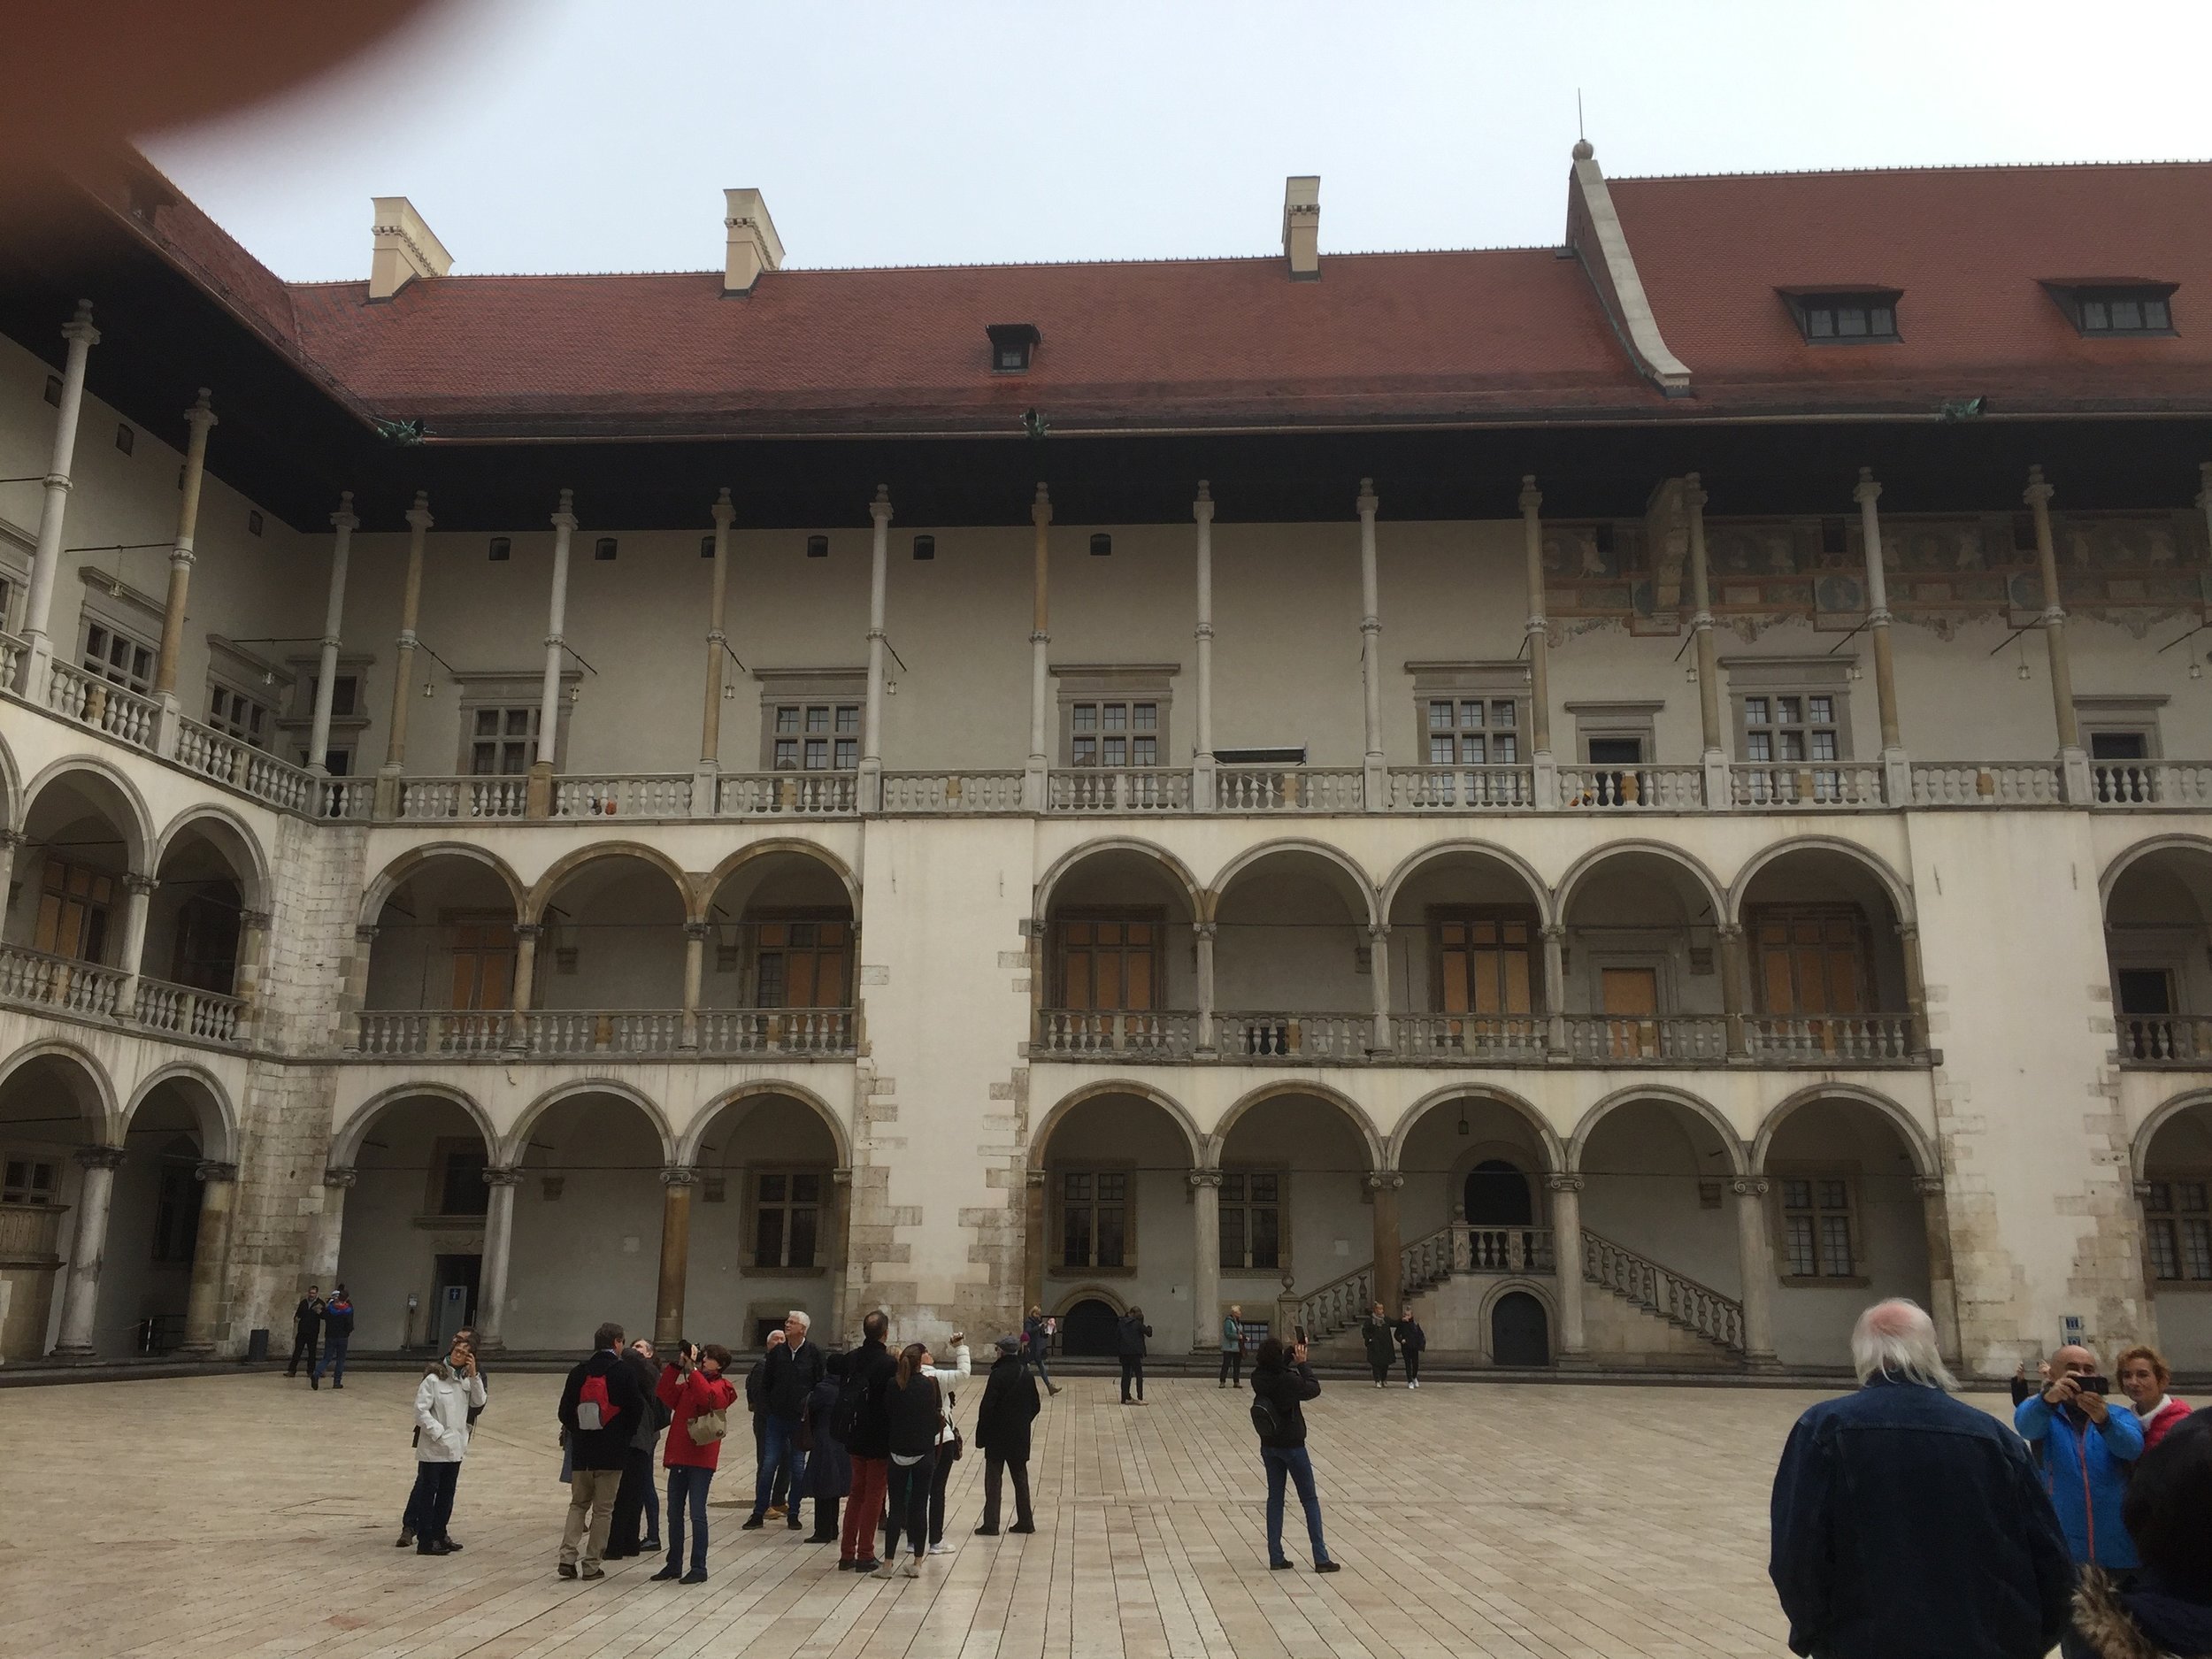 Courtyard of Wawel Castle